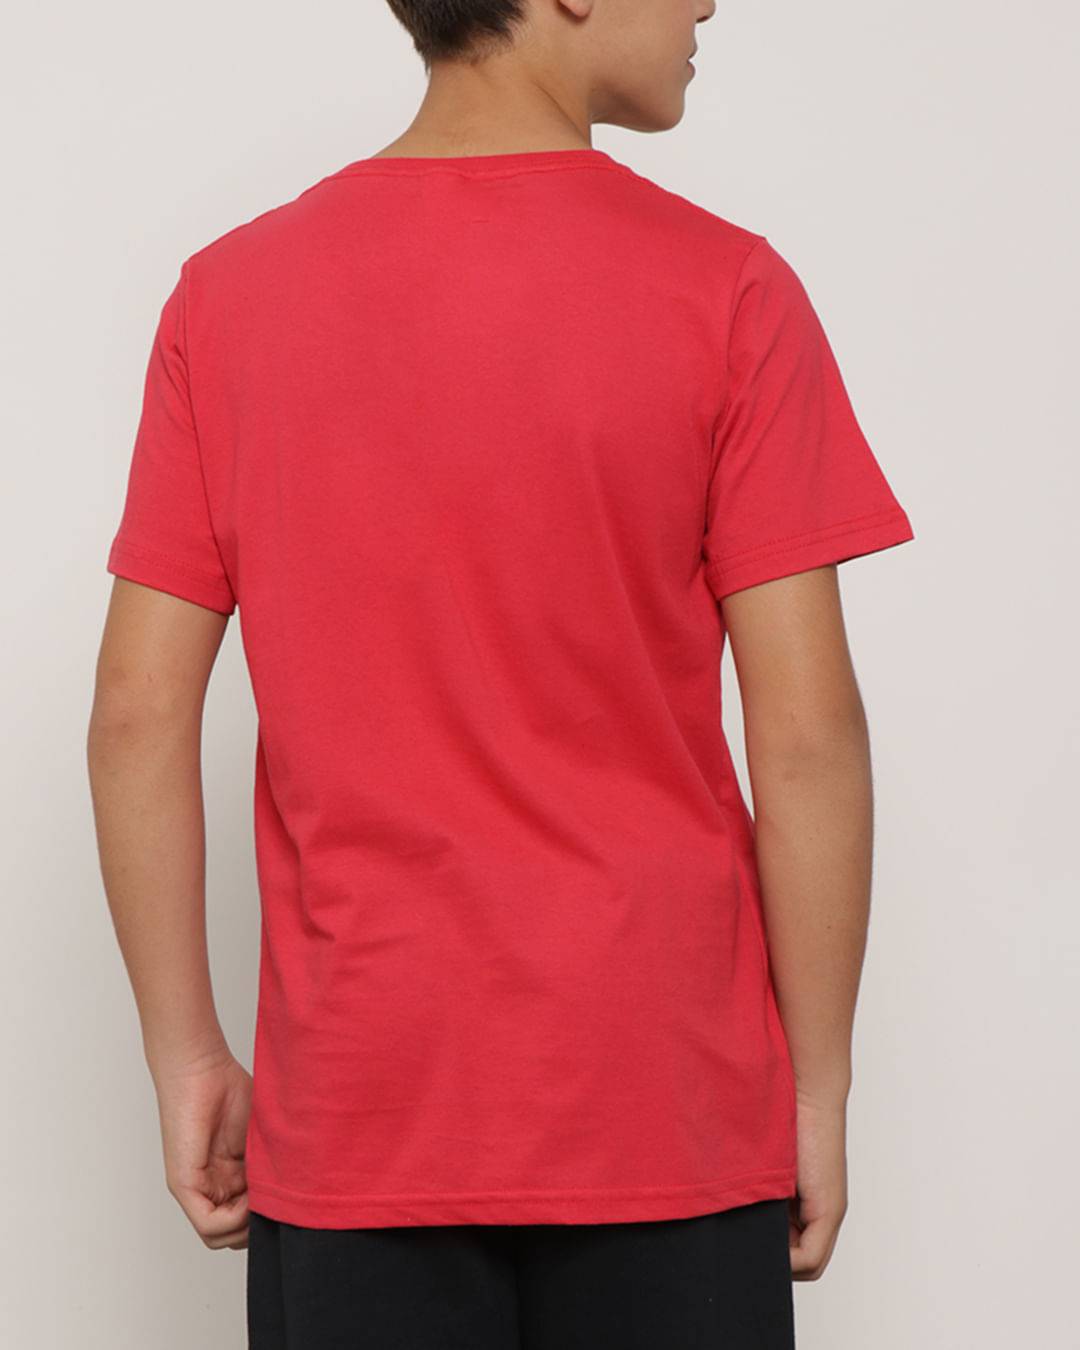 Camiseta-Juvenil-Manga-Curta-Estampada-Vermelha-